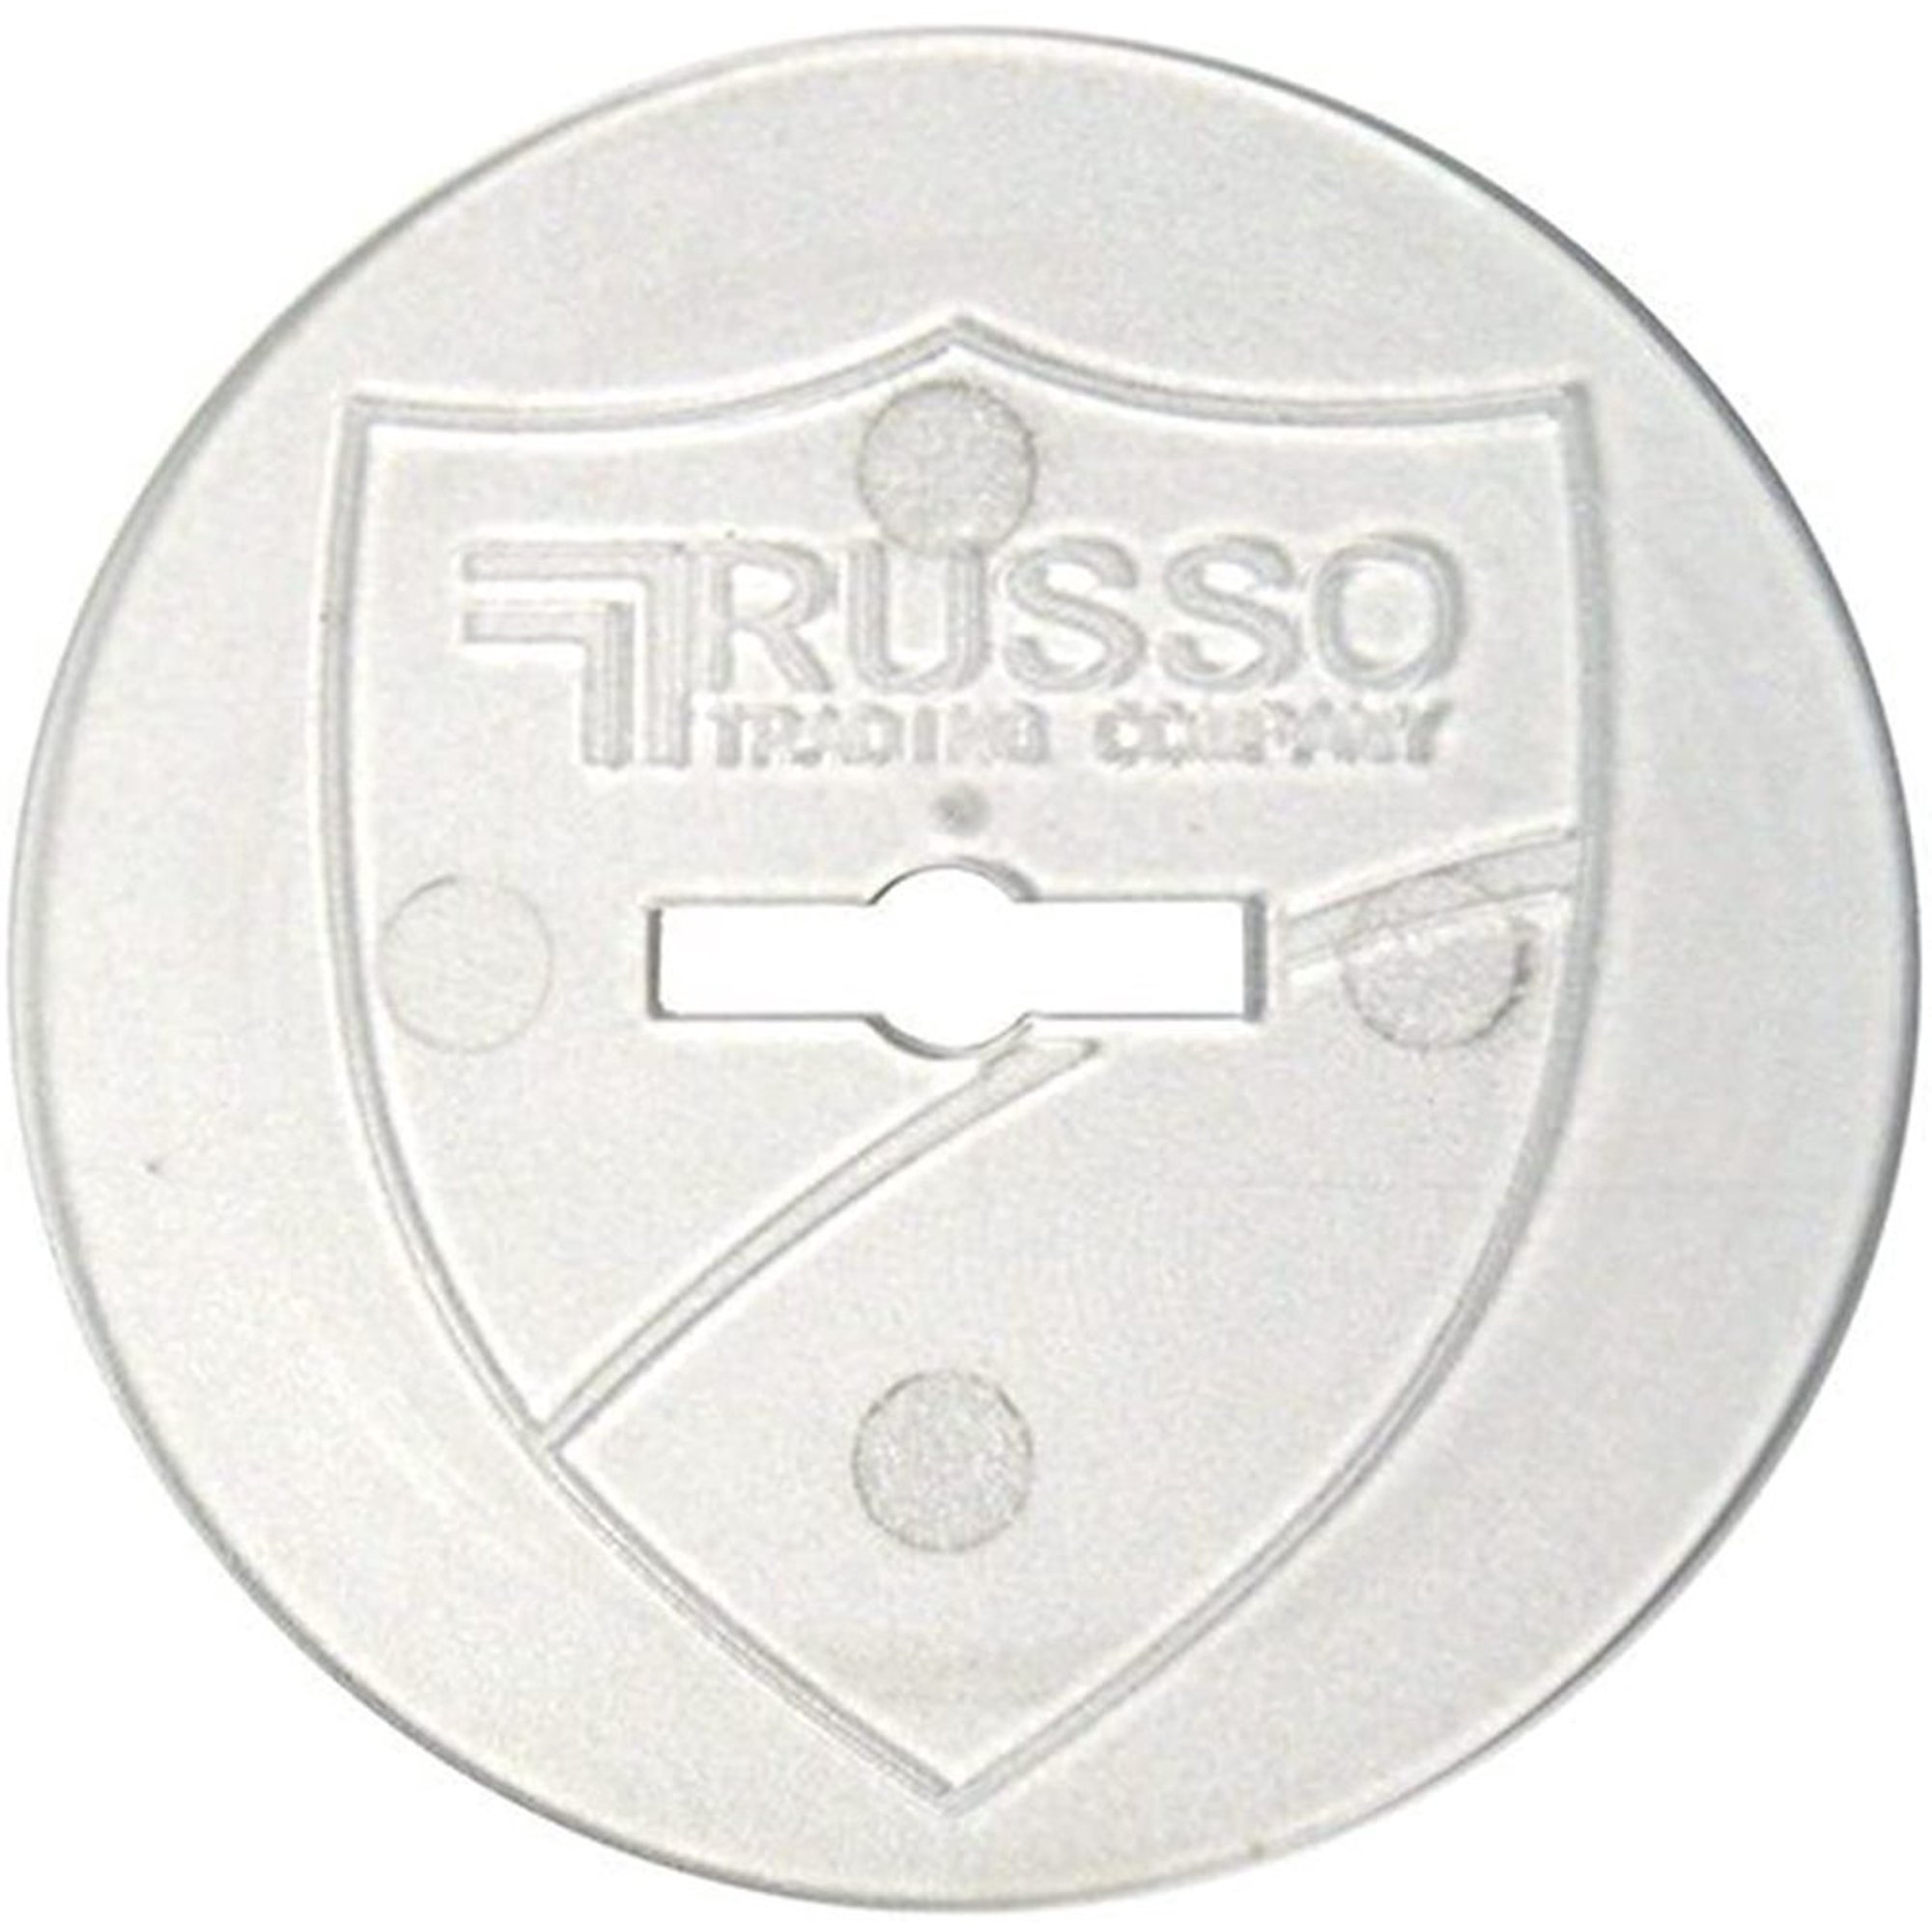 Bộ ke vít cân bằng ốp lát gạch Spin Doctor Pro Kit của Russo Mỹ